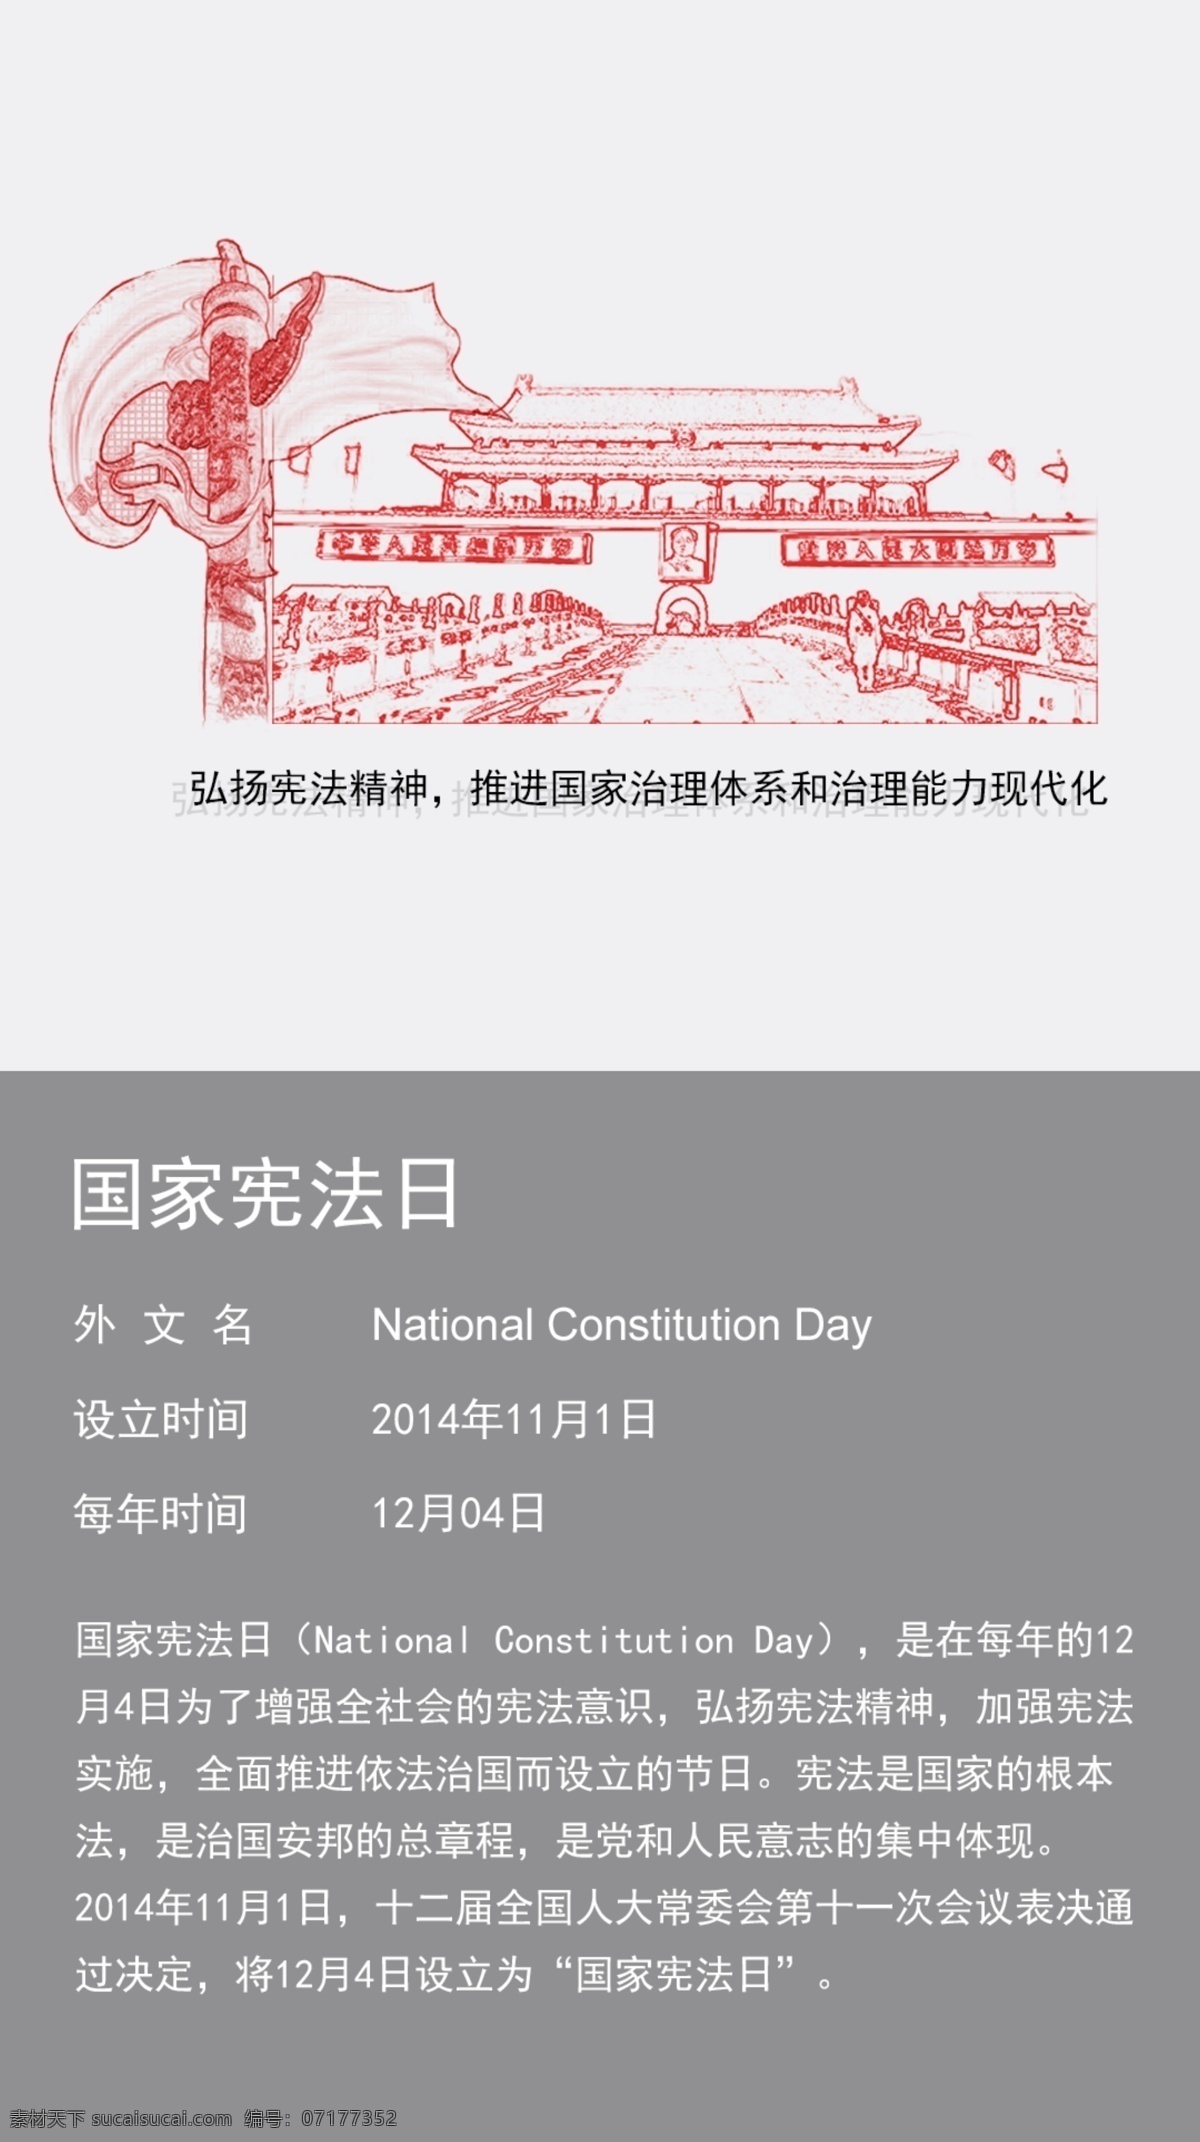 国家宪法日 节日 朋友圈宣传 手机海报 高清 节日节气 分层